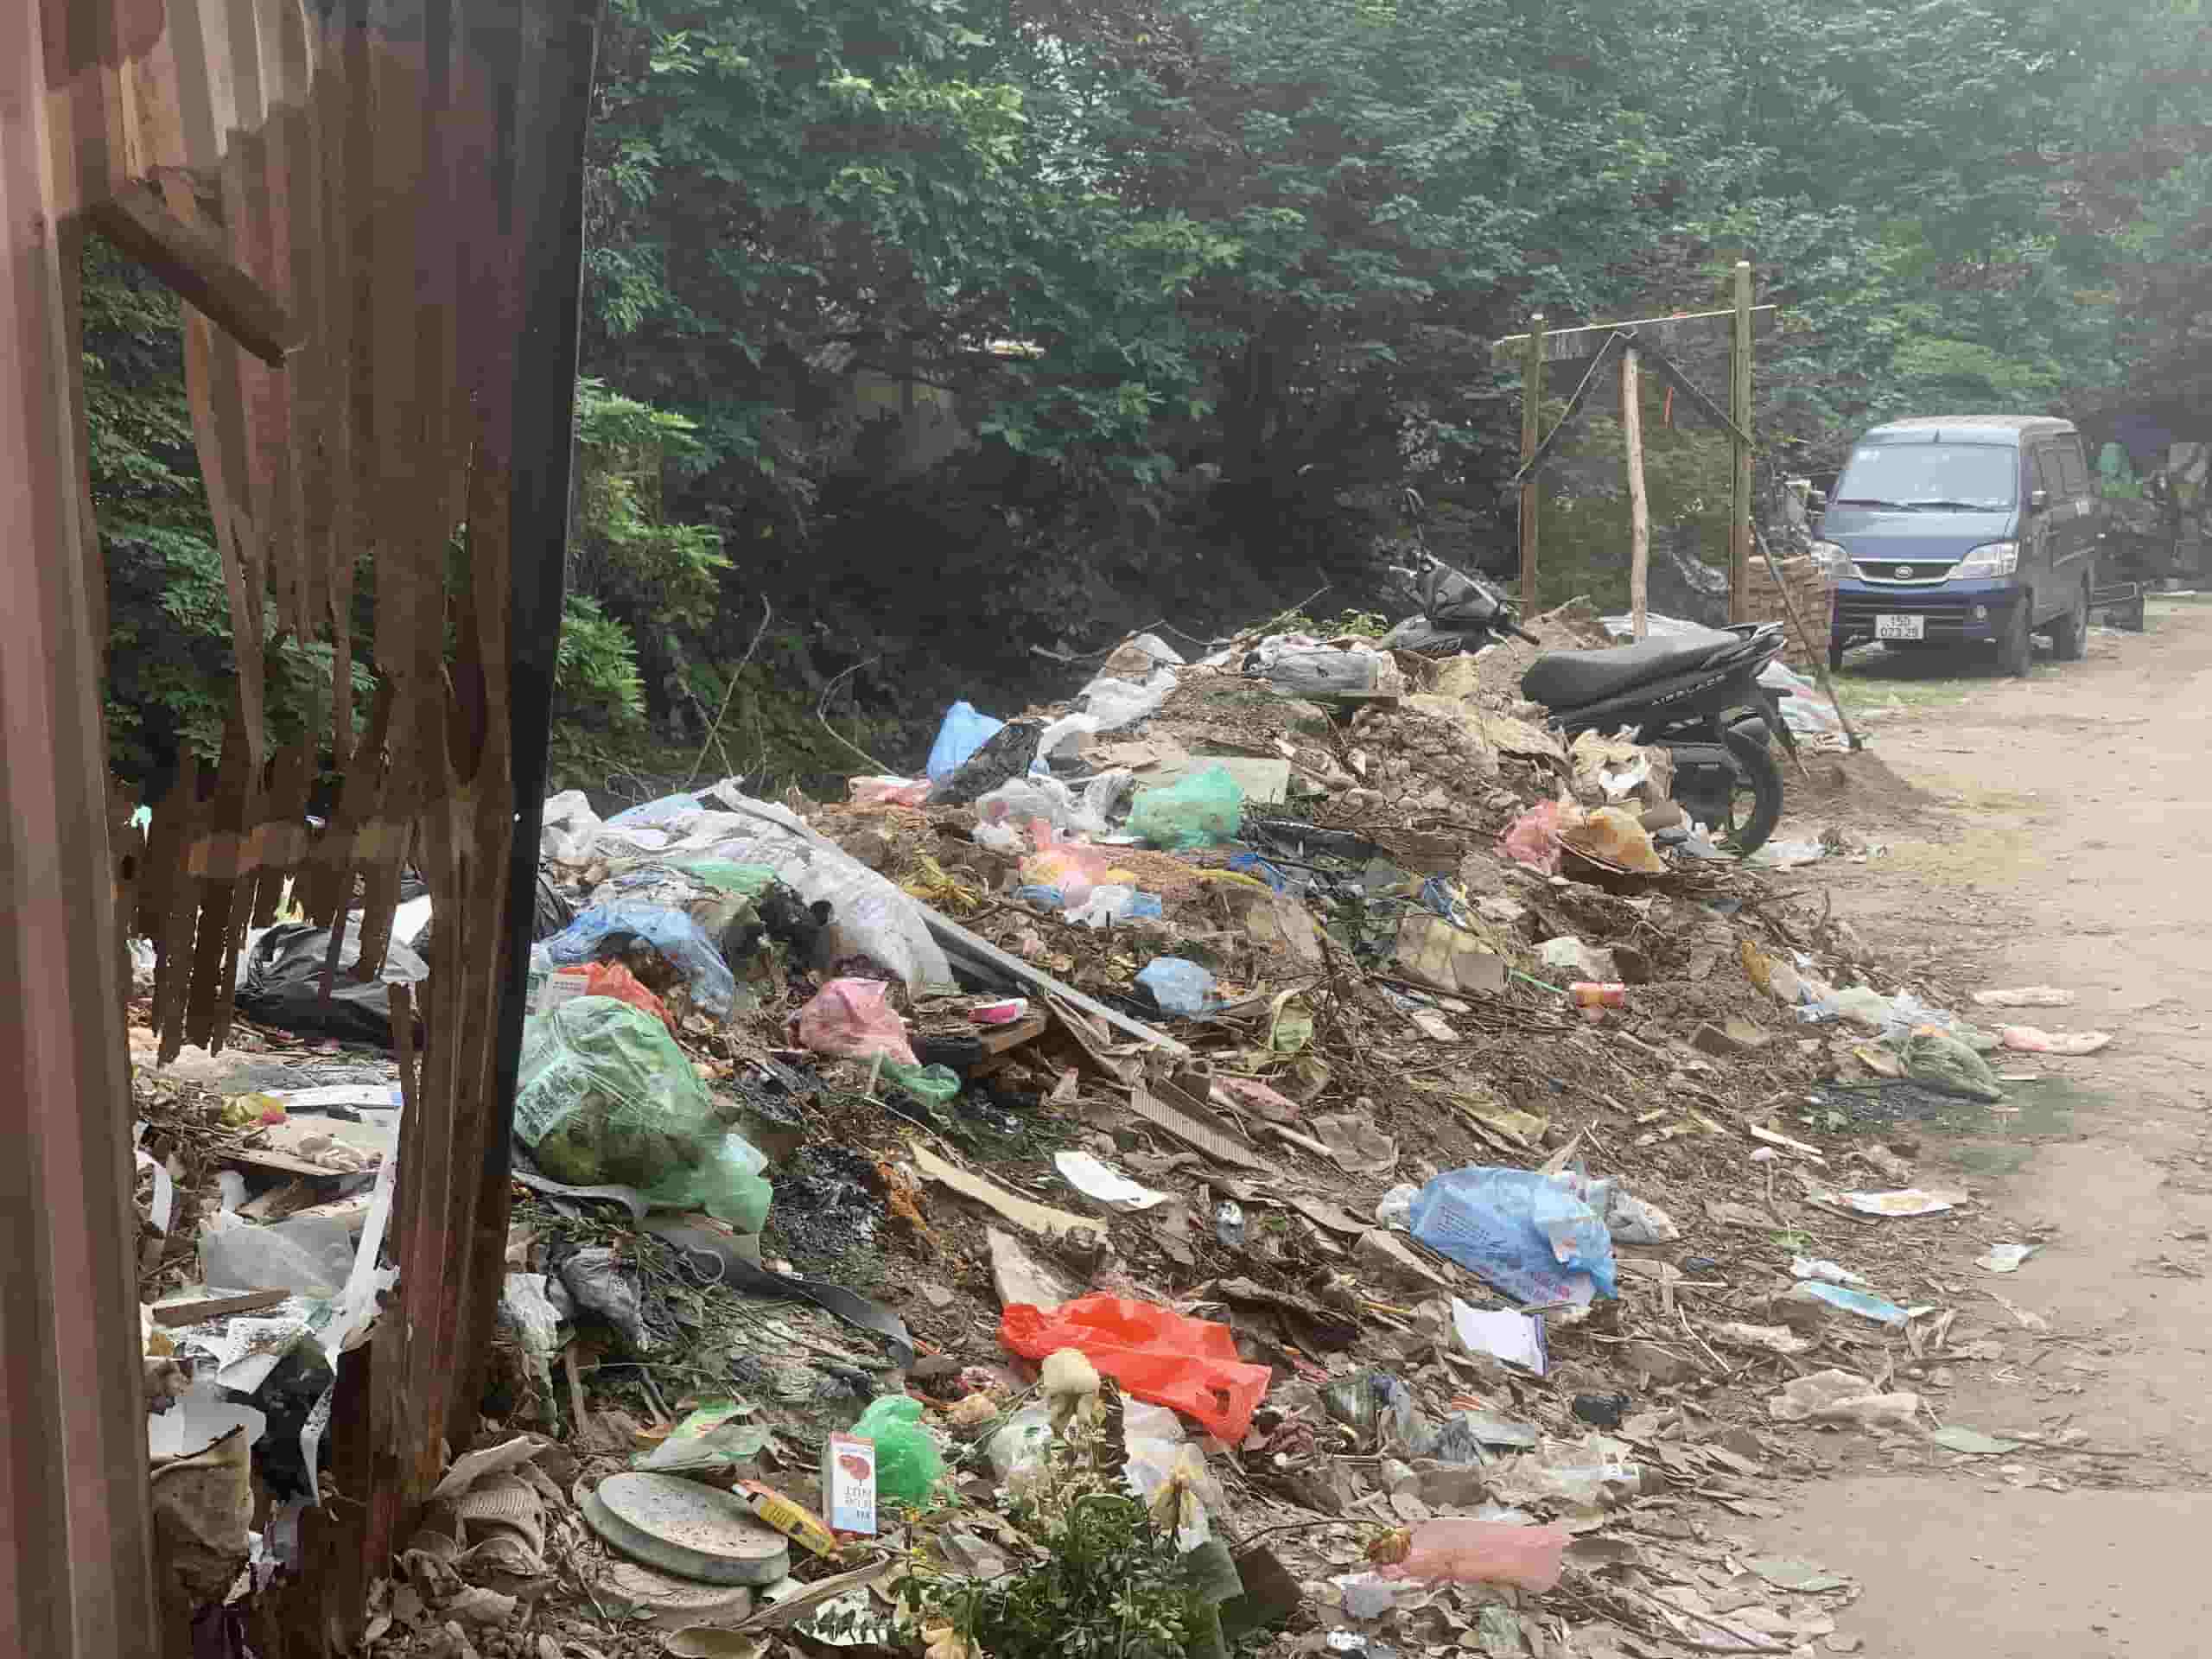 Xung quanh mương biến thành những “núi rác thải” tự phát, gây mất mỹ quan đô thị, nguy hiểm cho người dân đi lại. Ảnh: Nhật Minh